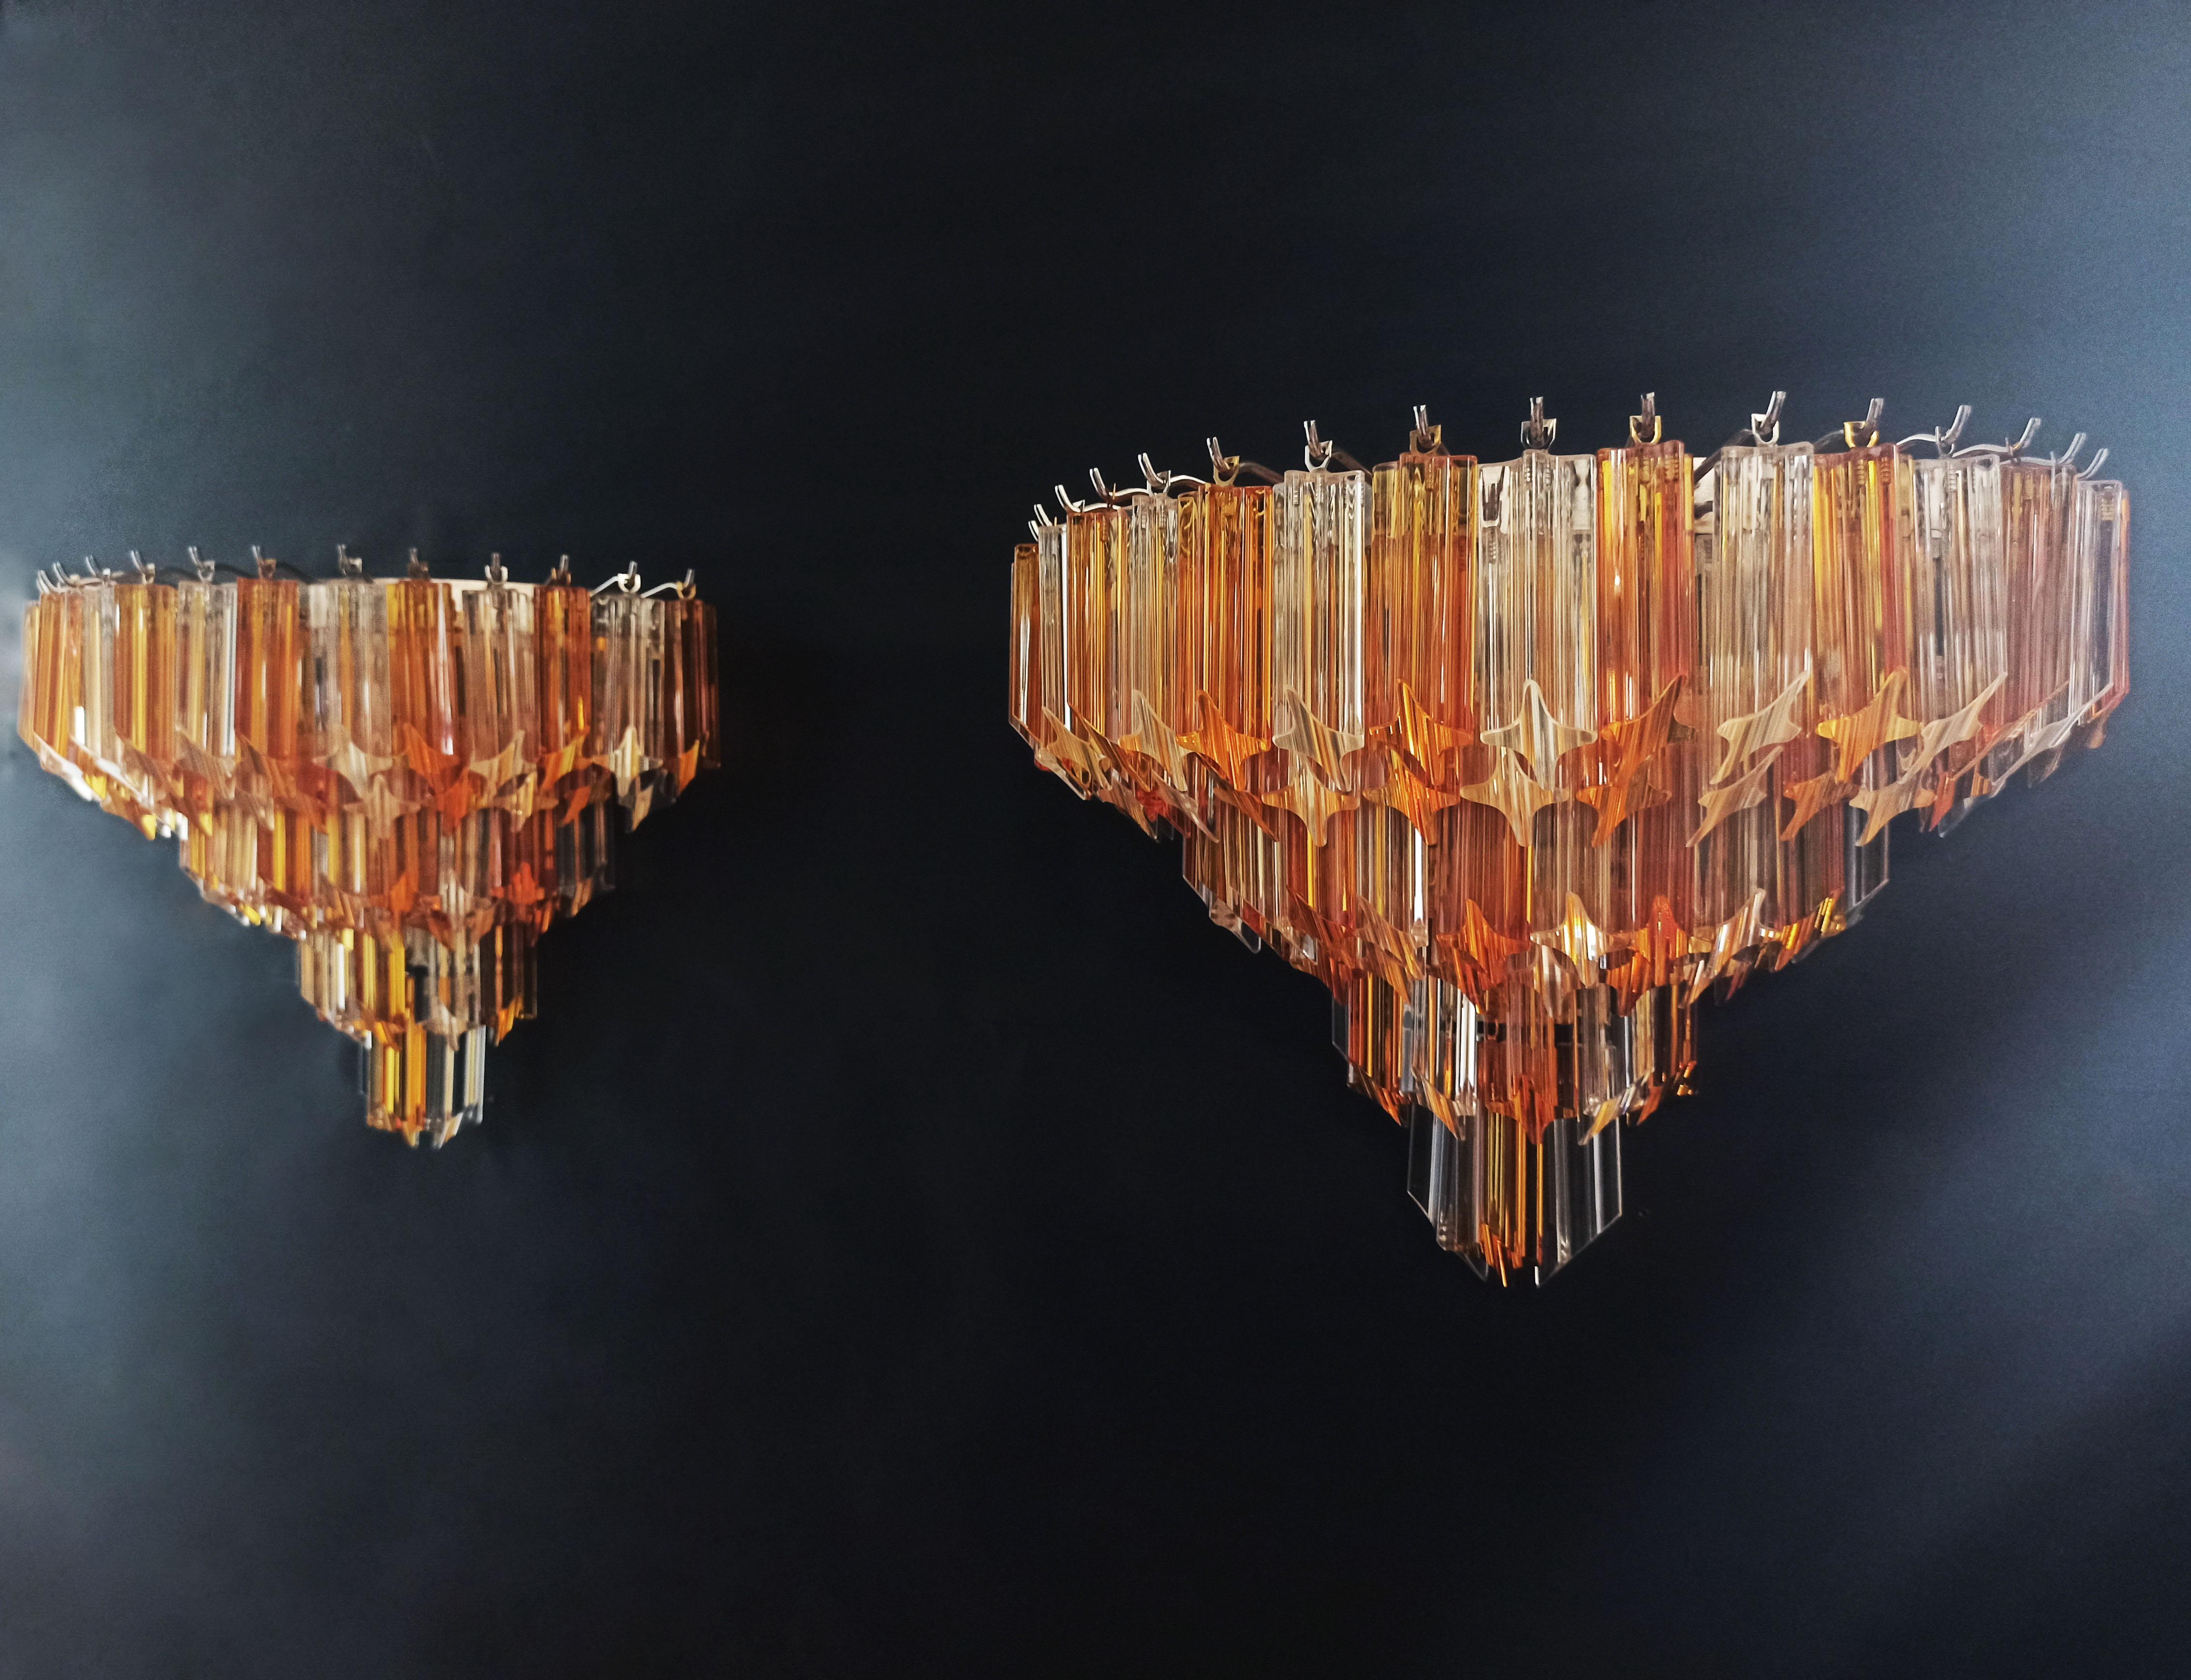 Fantastisches Paar von Vintage Murano Wandleuchte von 63 Murano-Kristall-Prisma (quadriedri) für jede Applique in einem verchromten Metallrahmen gemacht. Die Gläser sind trasparent und bernsteinfarben.
Zeitraum: 1980s
Abmessungen: 13,60 Zoll Höhe